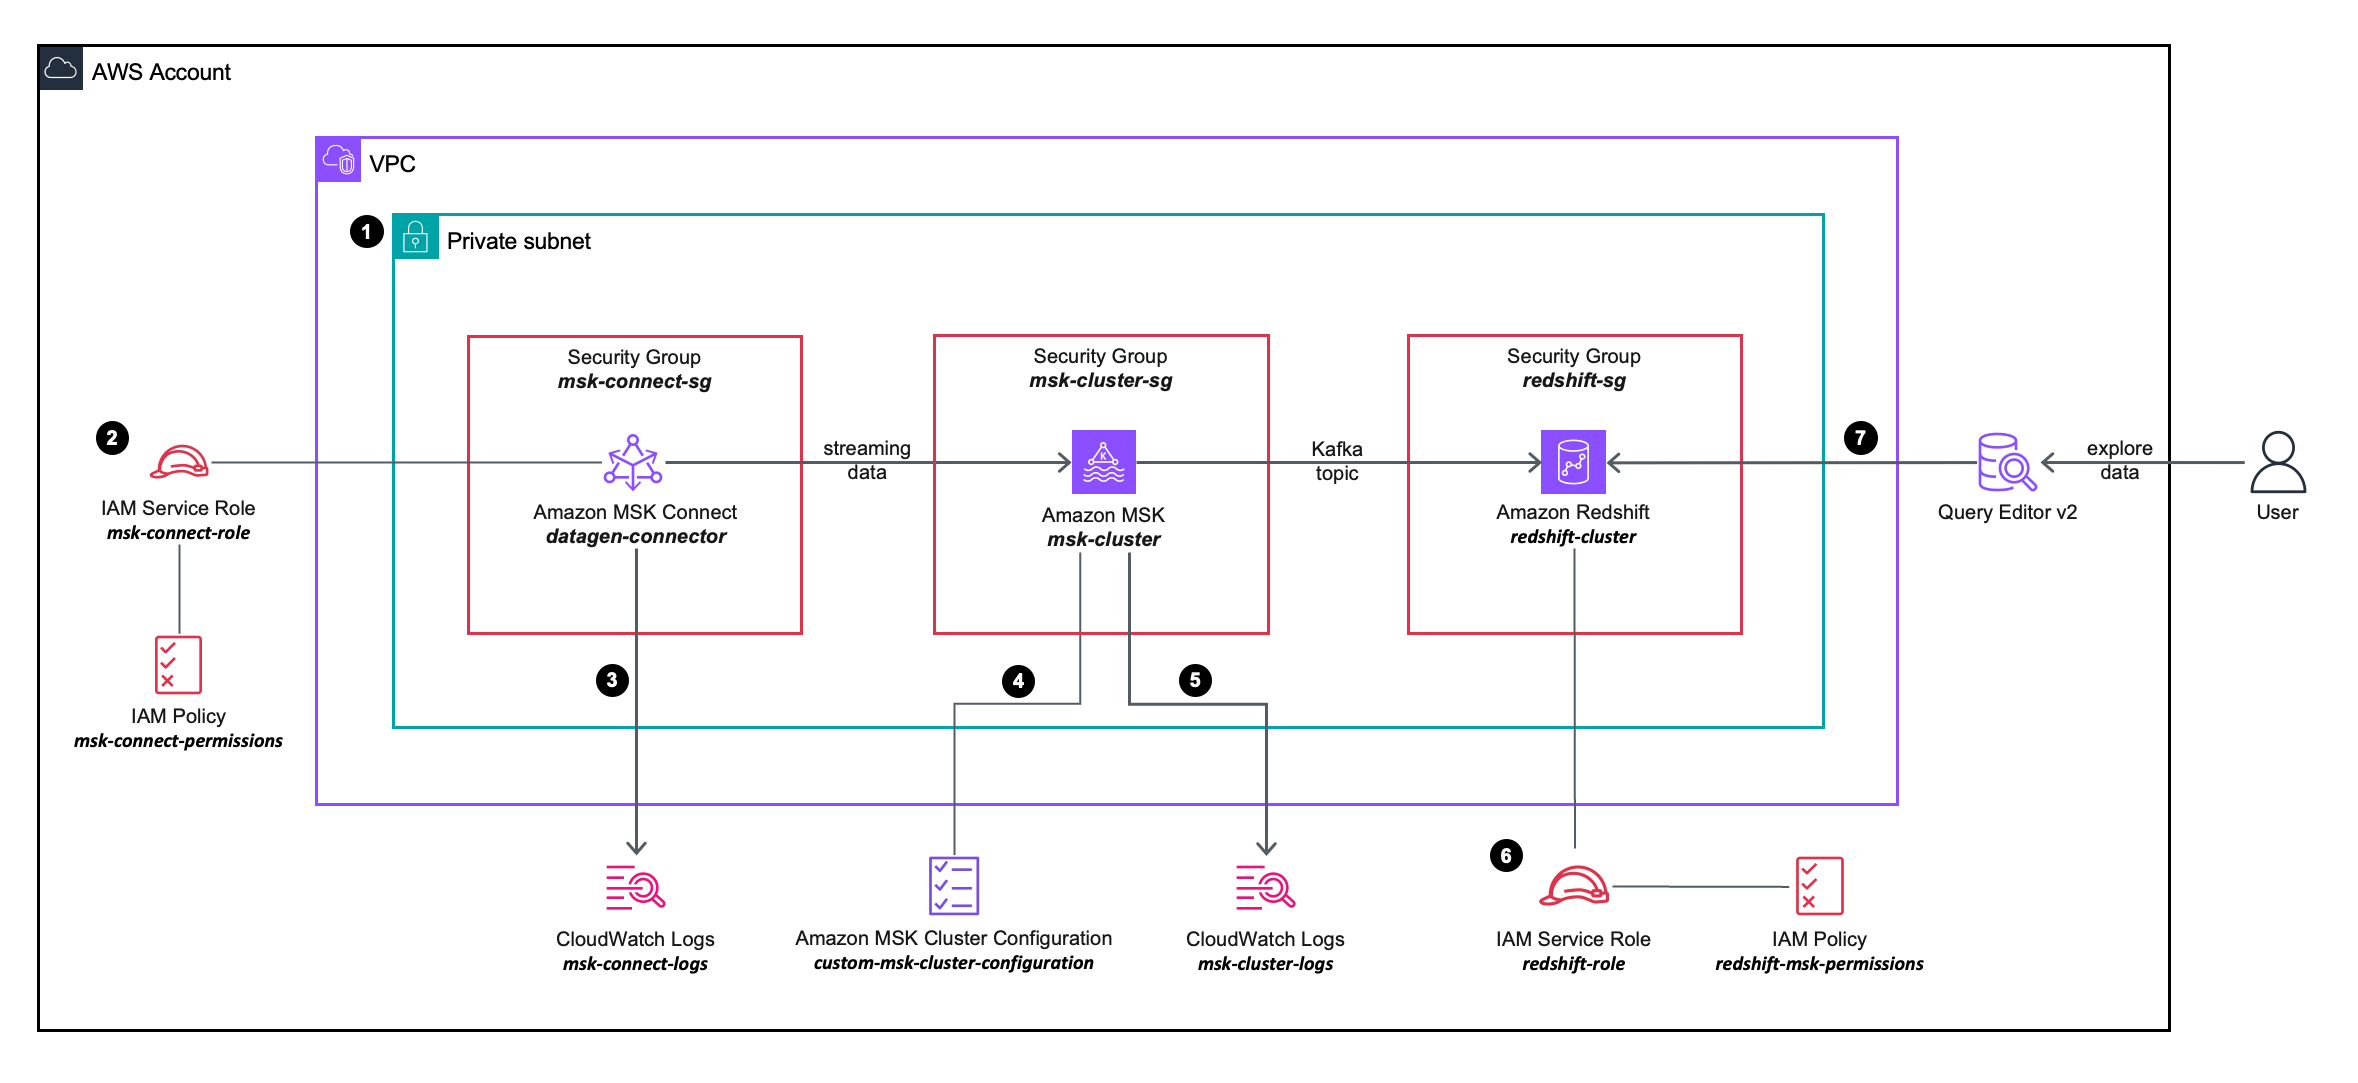 Kullanacağınız AWS hizmetlerinin yapılandırmasını ve entegrasyonunu daha ayrıntılı olarak açıklayan çözüm mimarisi şeması